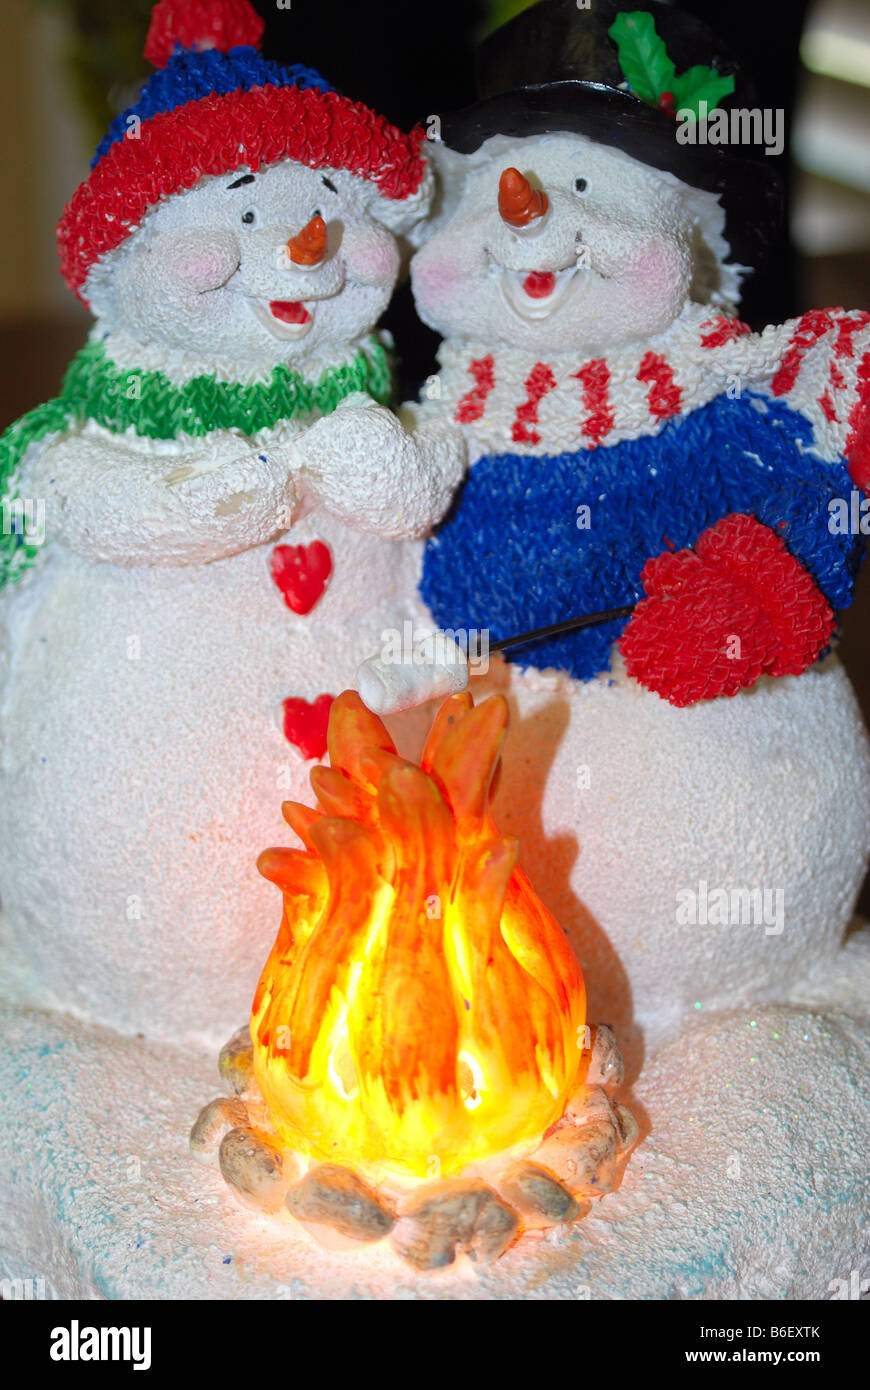 Gros plan d'une décoration de Noël de deux snowpeople, un bonhomme de neige et un snowwoman Banque D'Images